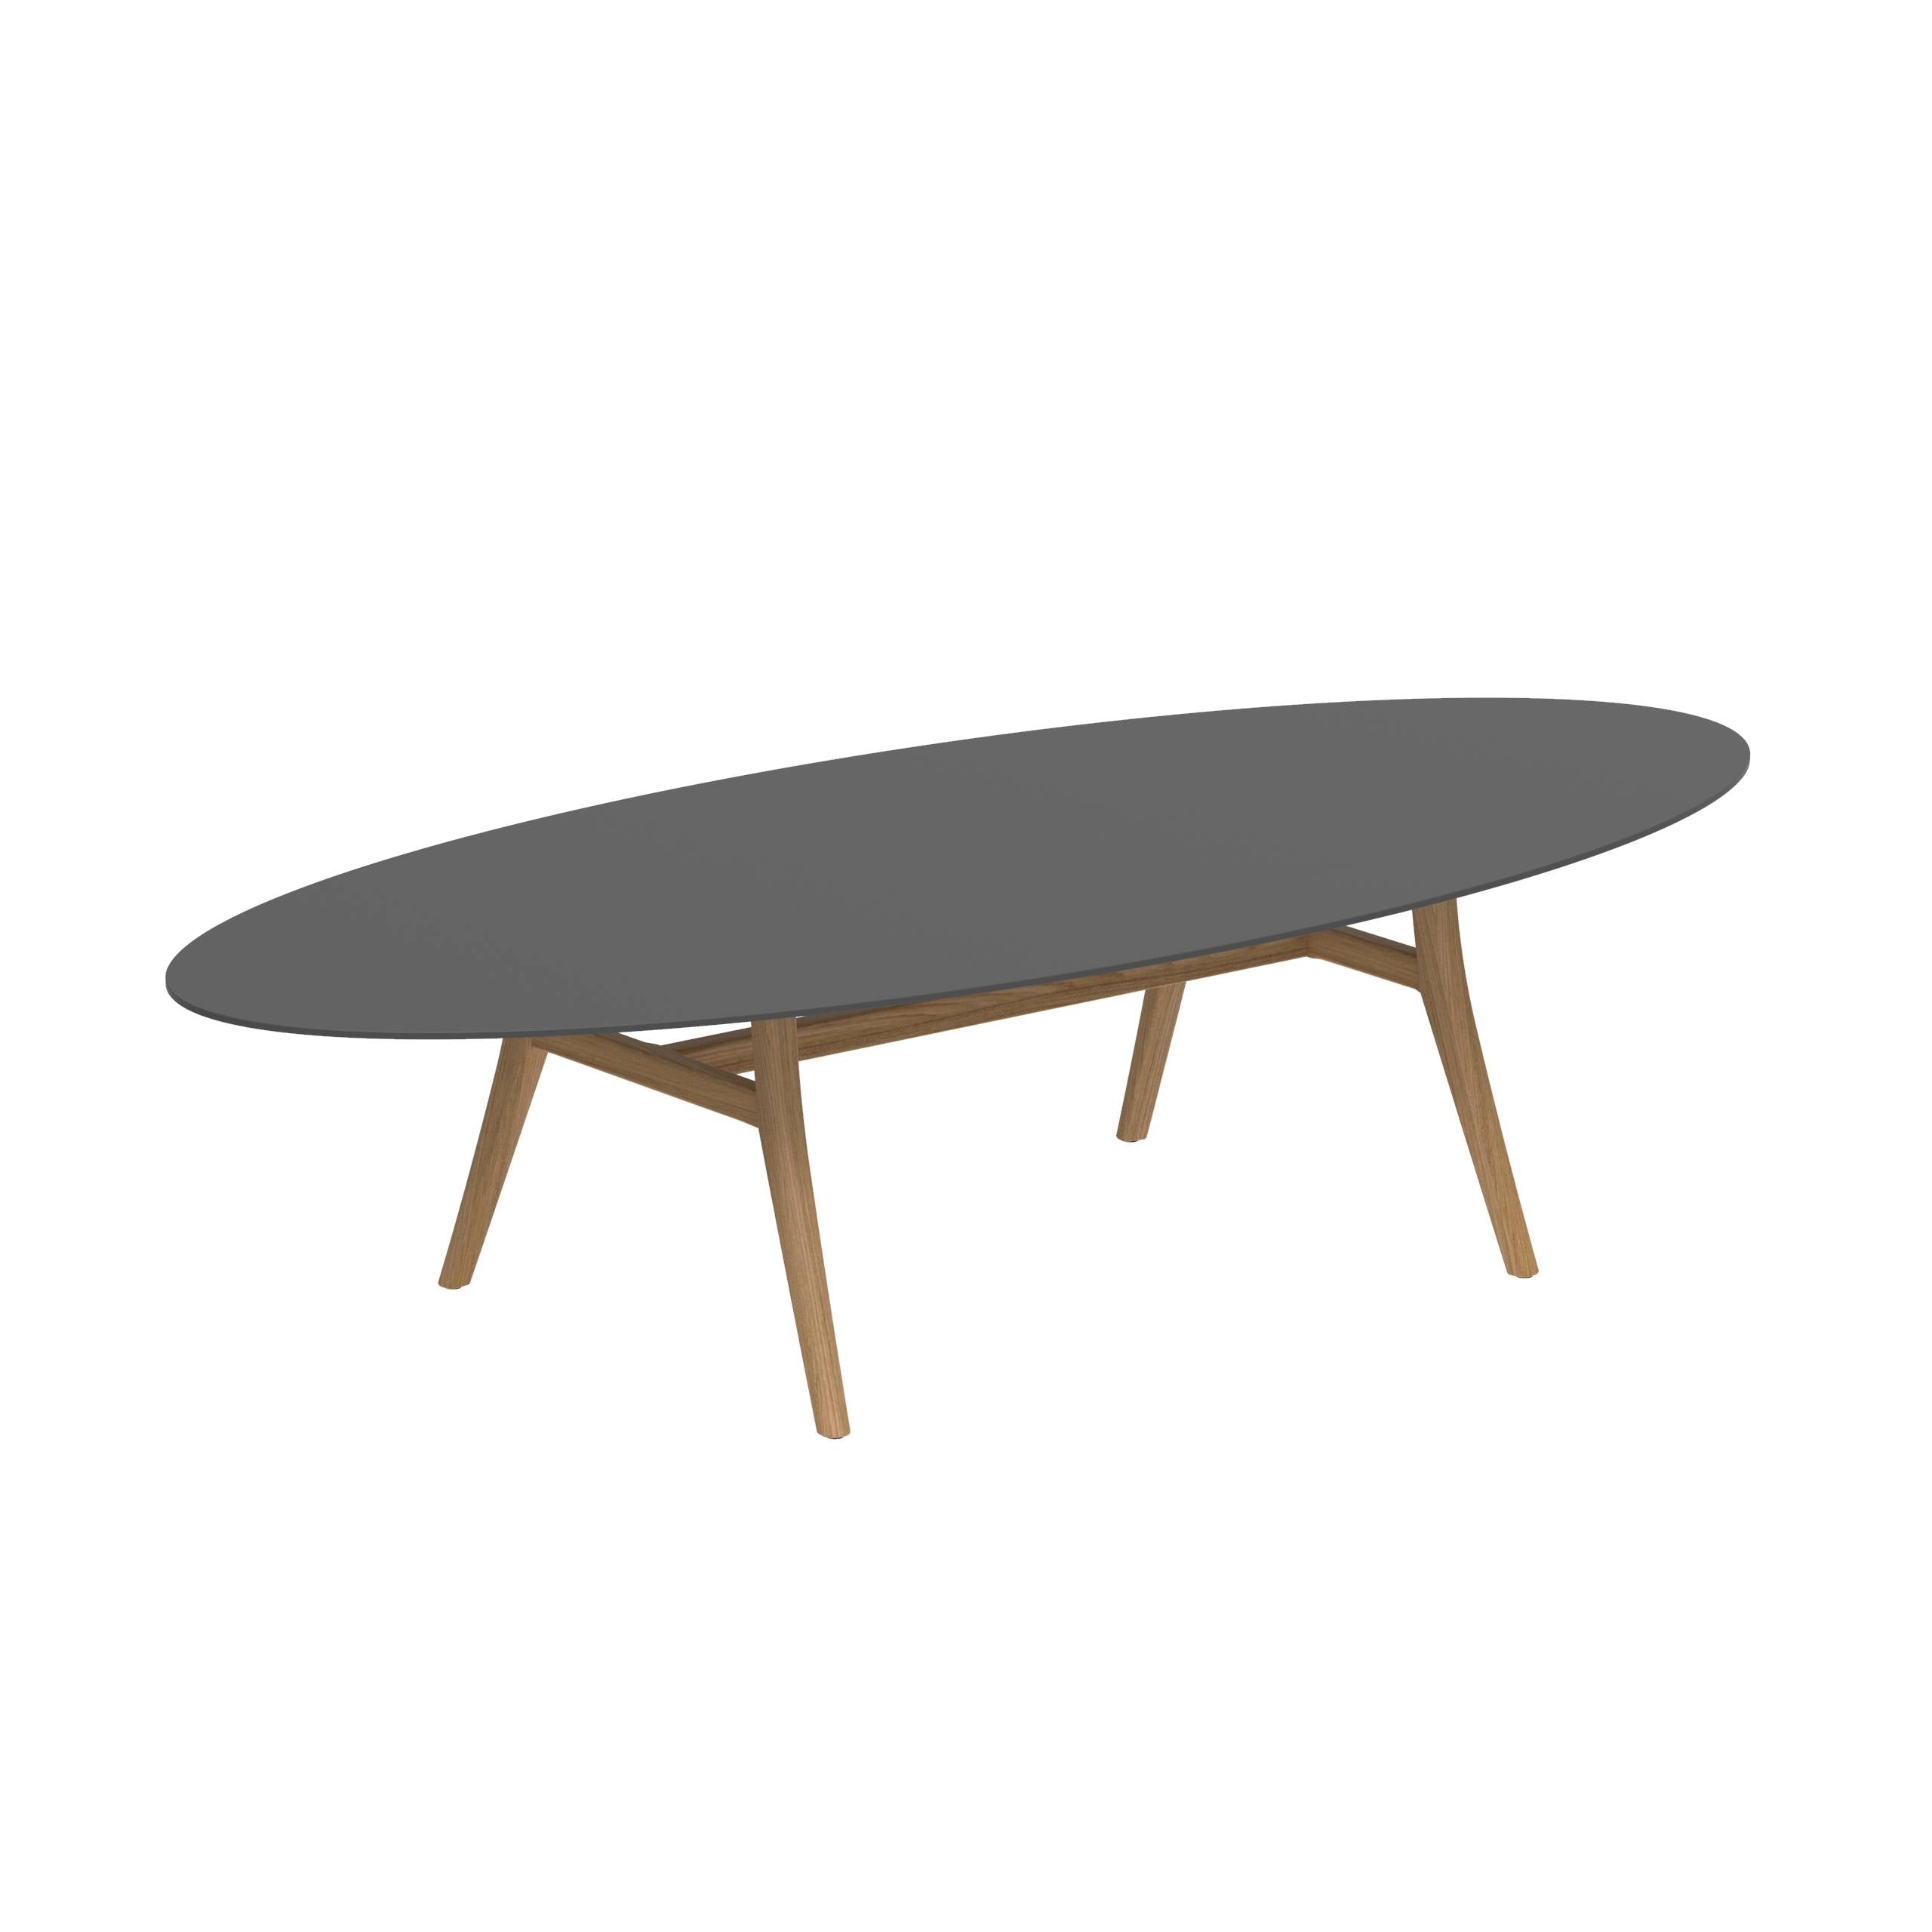 Zidiz Table 320x140cm Teak Legs - Ceramic Table Top Black